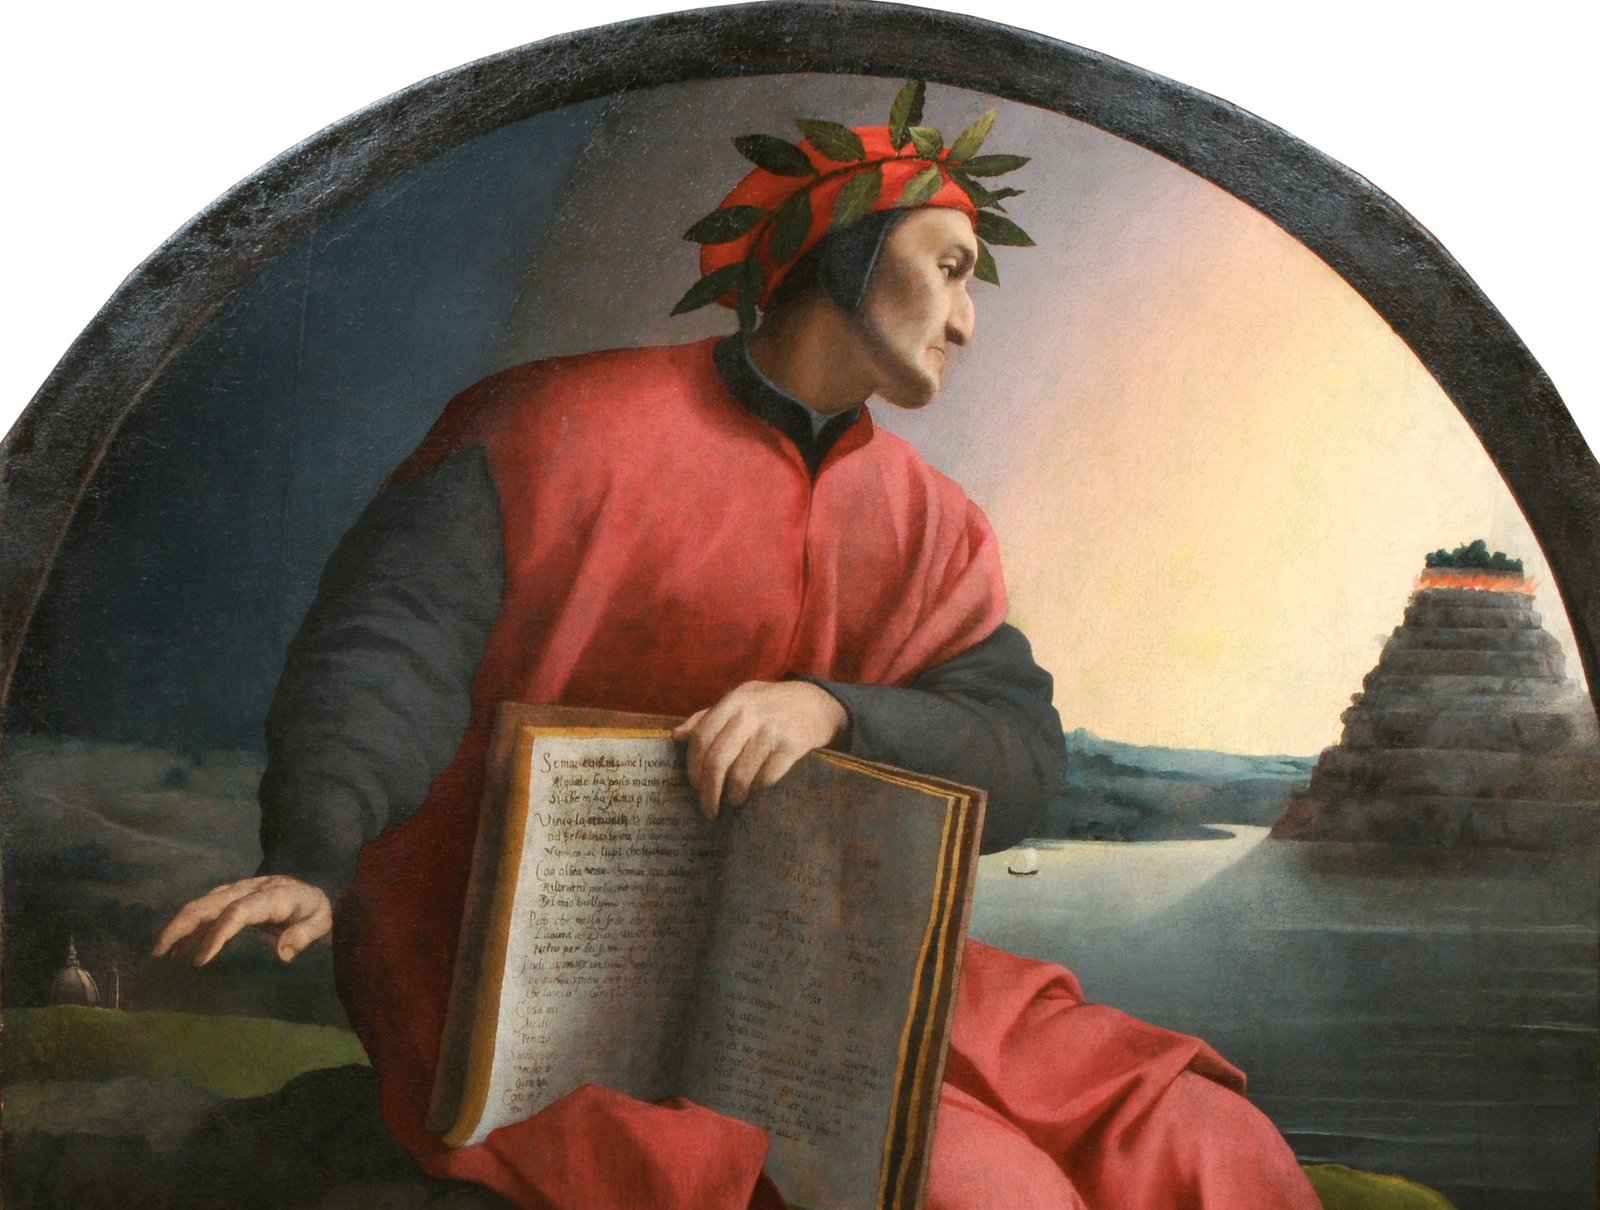 Данте алигьери философия